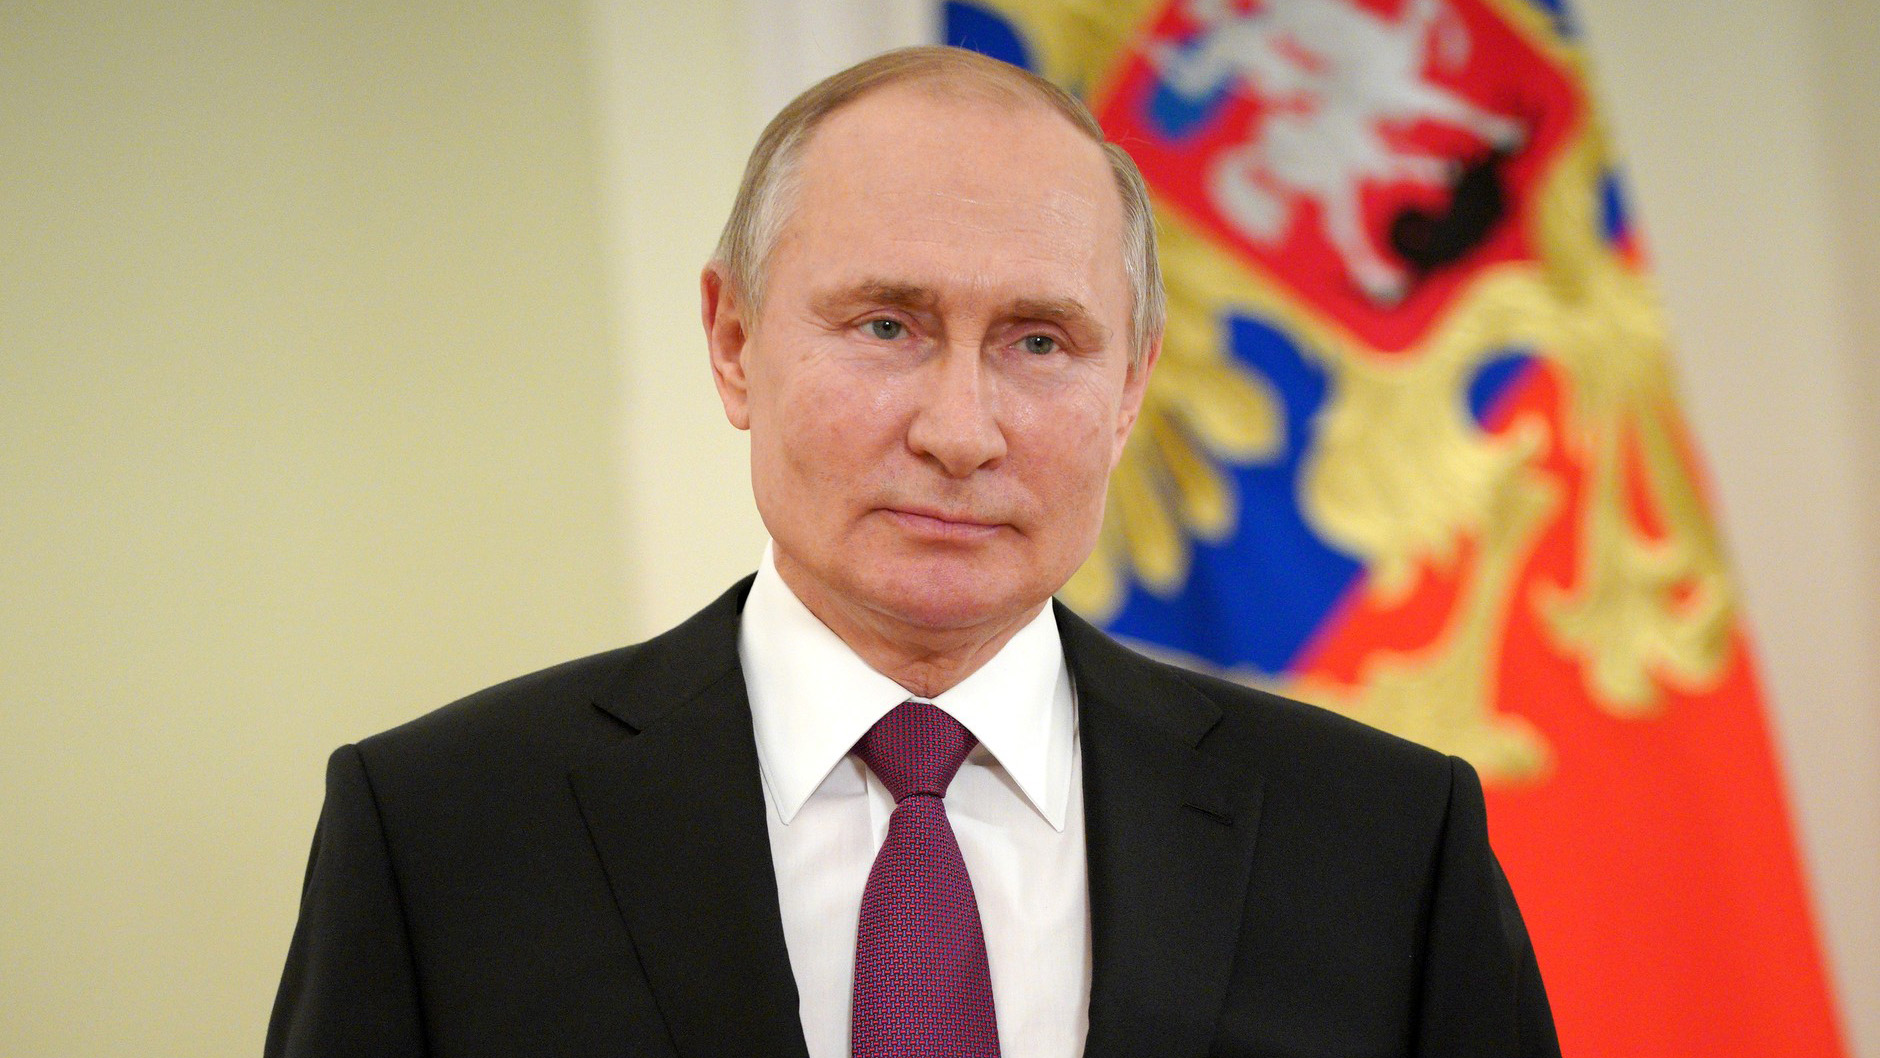 بوتين يؤكد على عظمة روسيا وانتصارها المستقبلي